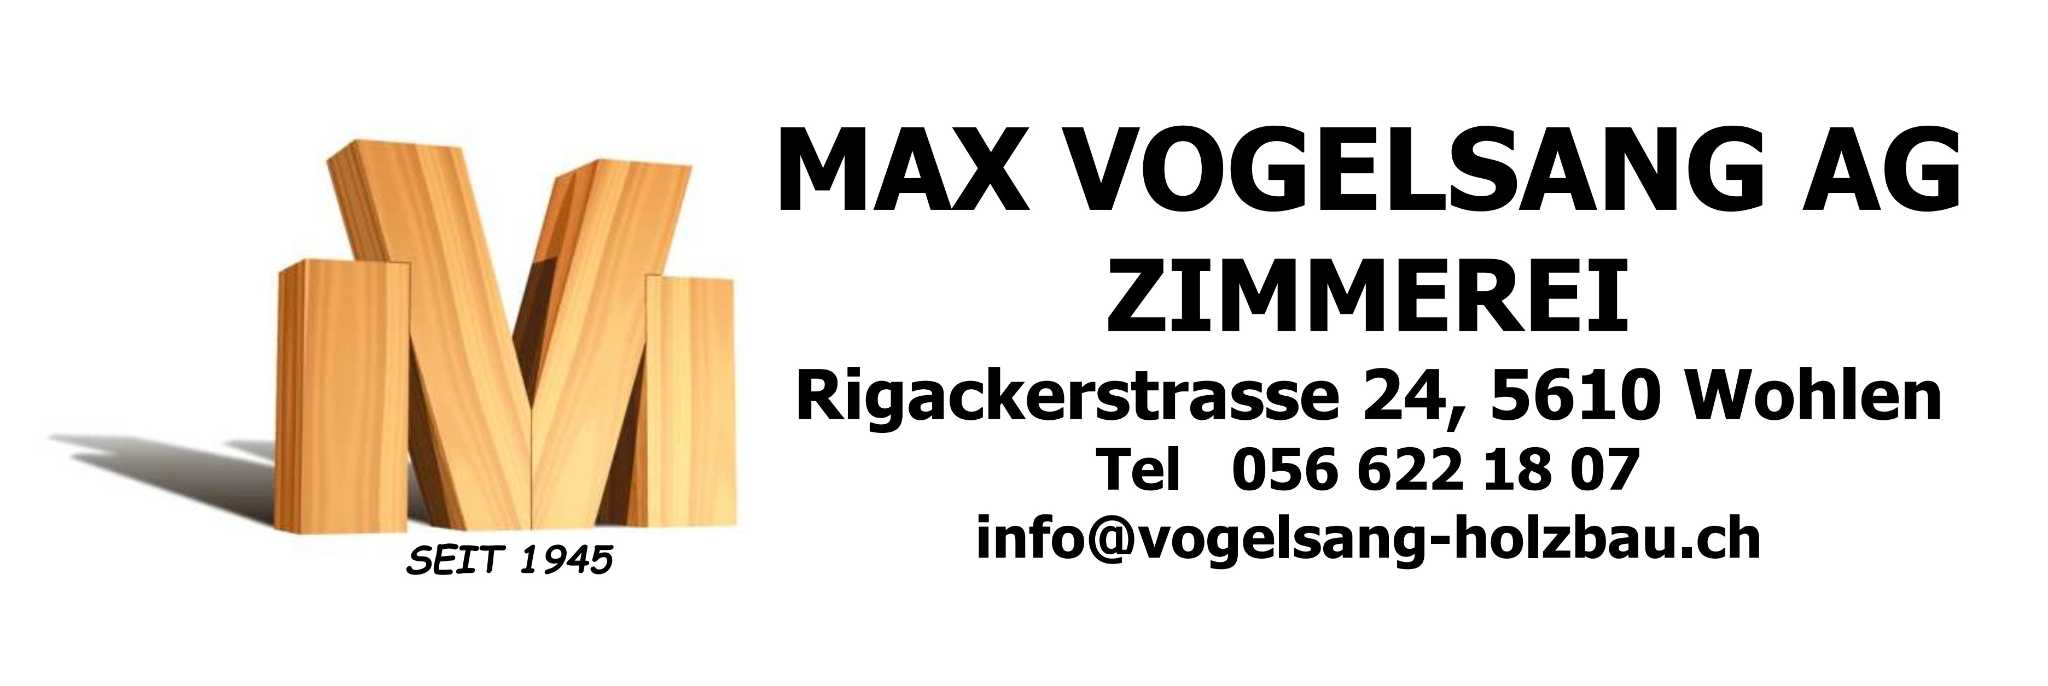 Max Vogelsang AG